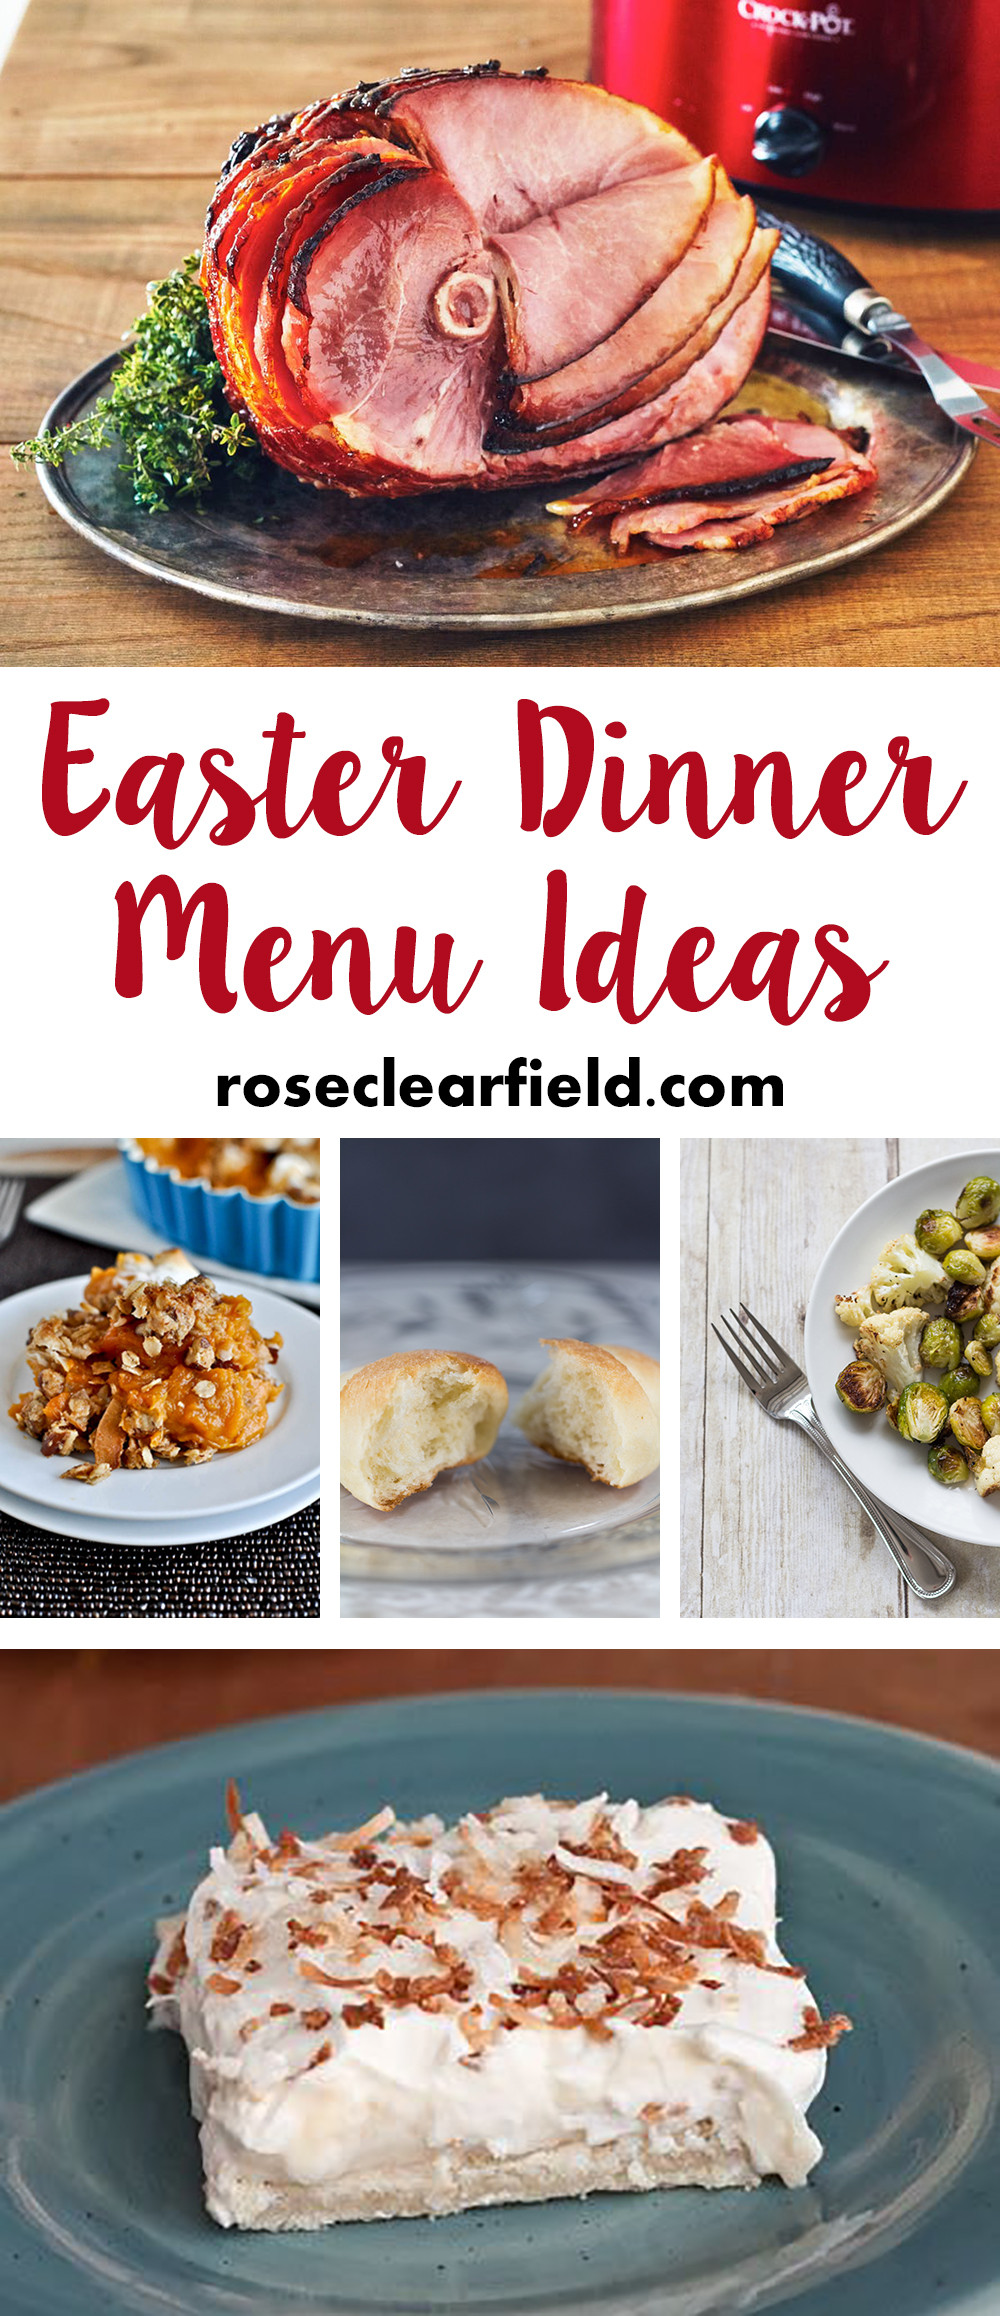 Easter Dinner Menus
 Easter Dinner Menu Ideas • Rose Clearfield